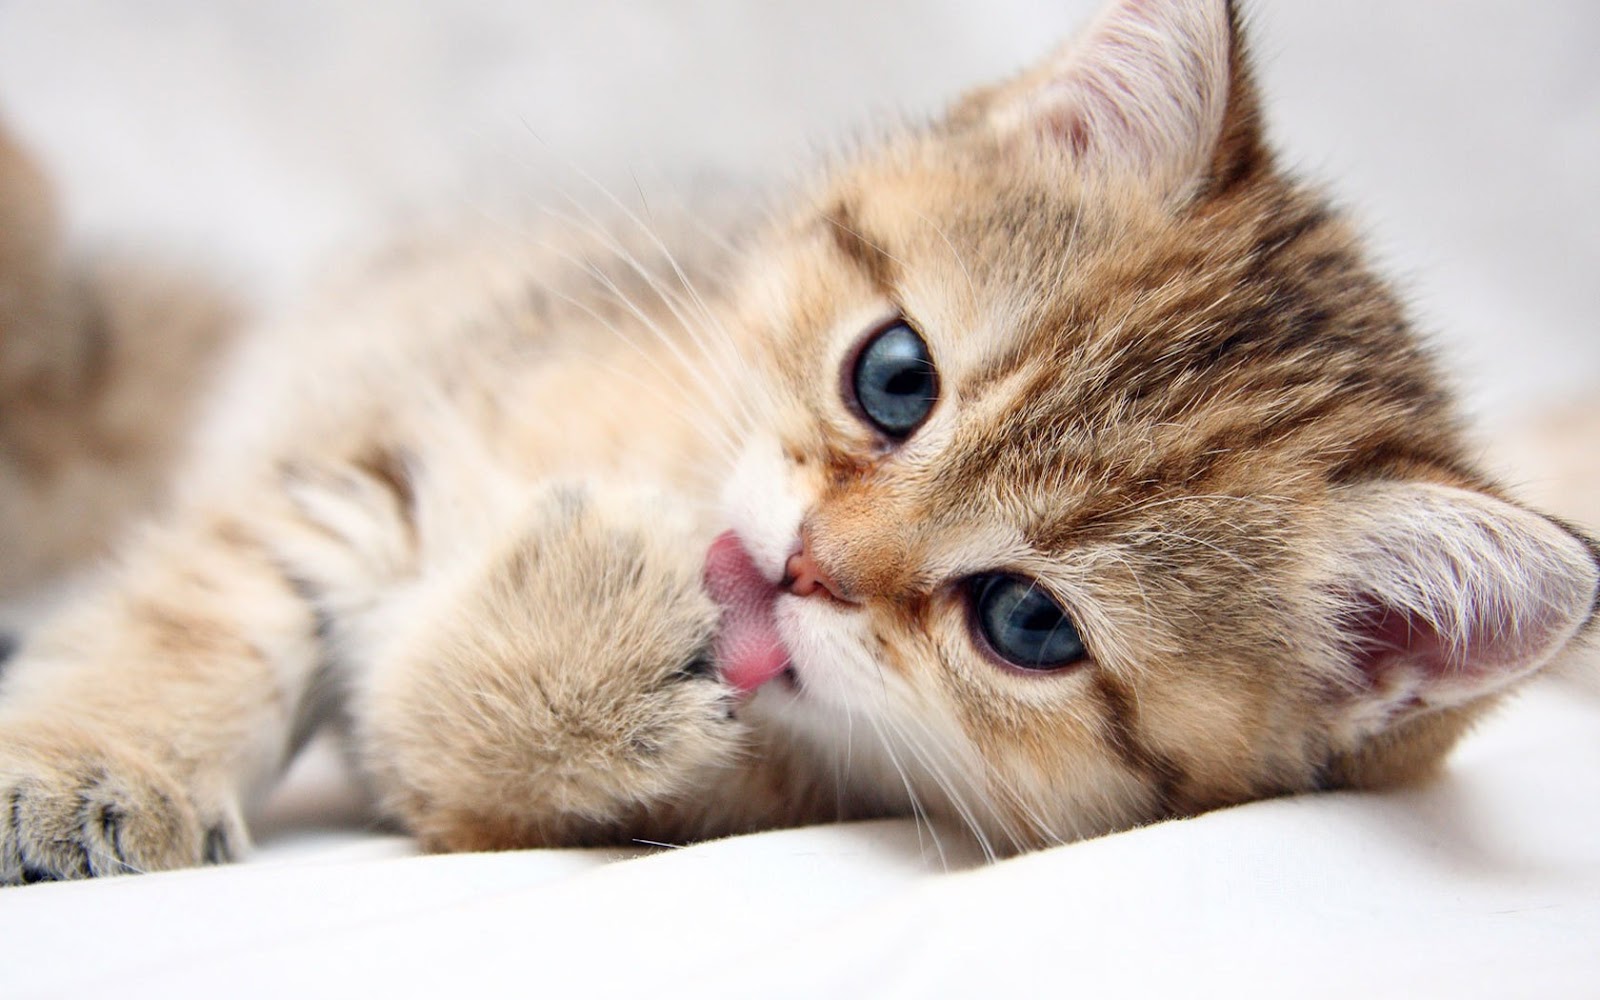 cats_animals_kittens_cat_kitten_cute_des